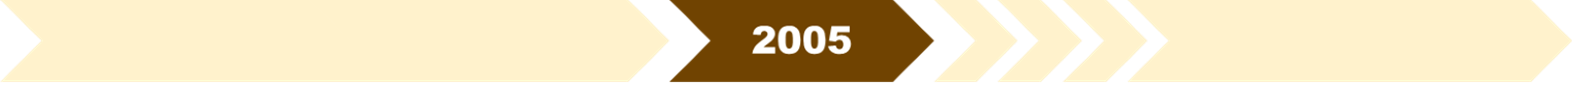 2005年：推出「中央註冊制度」及「綜合註冊資訊系統」